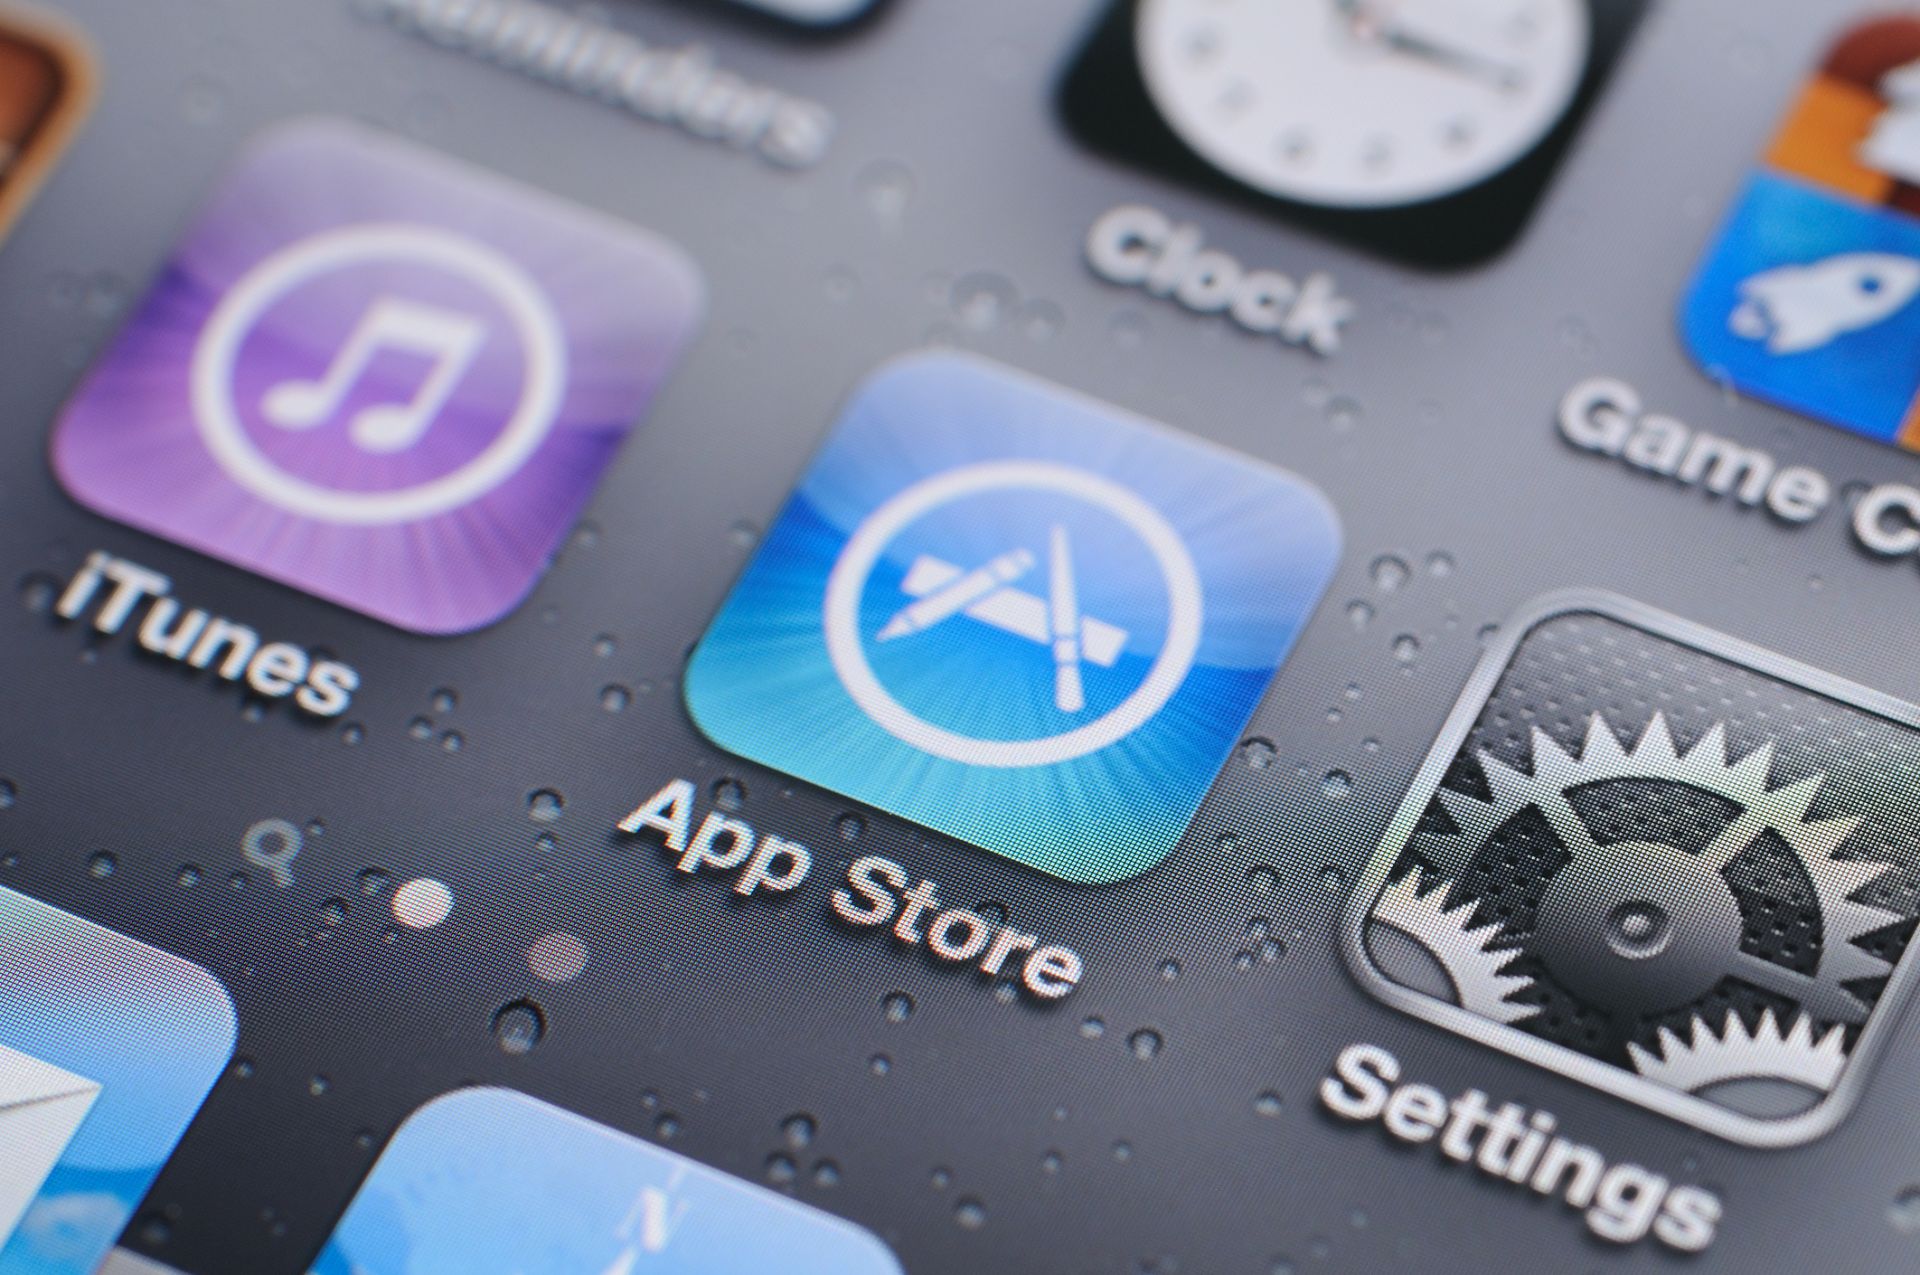  "Епъл" призова ползвателите на айФон (iPhone) и айПад (iPad) да направят актуализация на устройствата си, за да отстранят недостатъци в сигурността